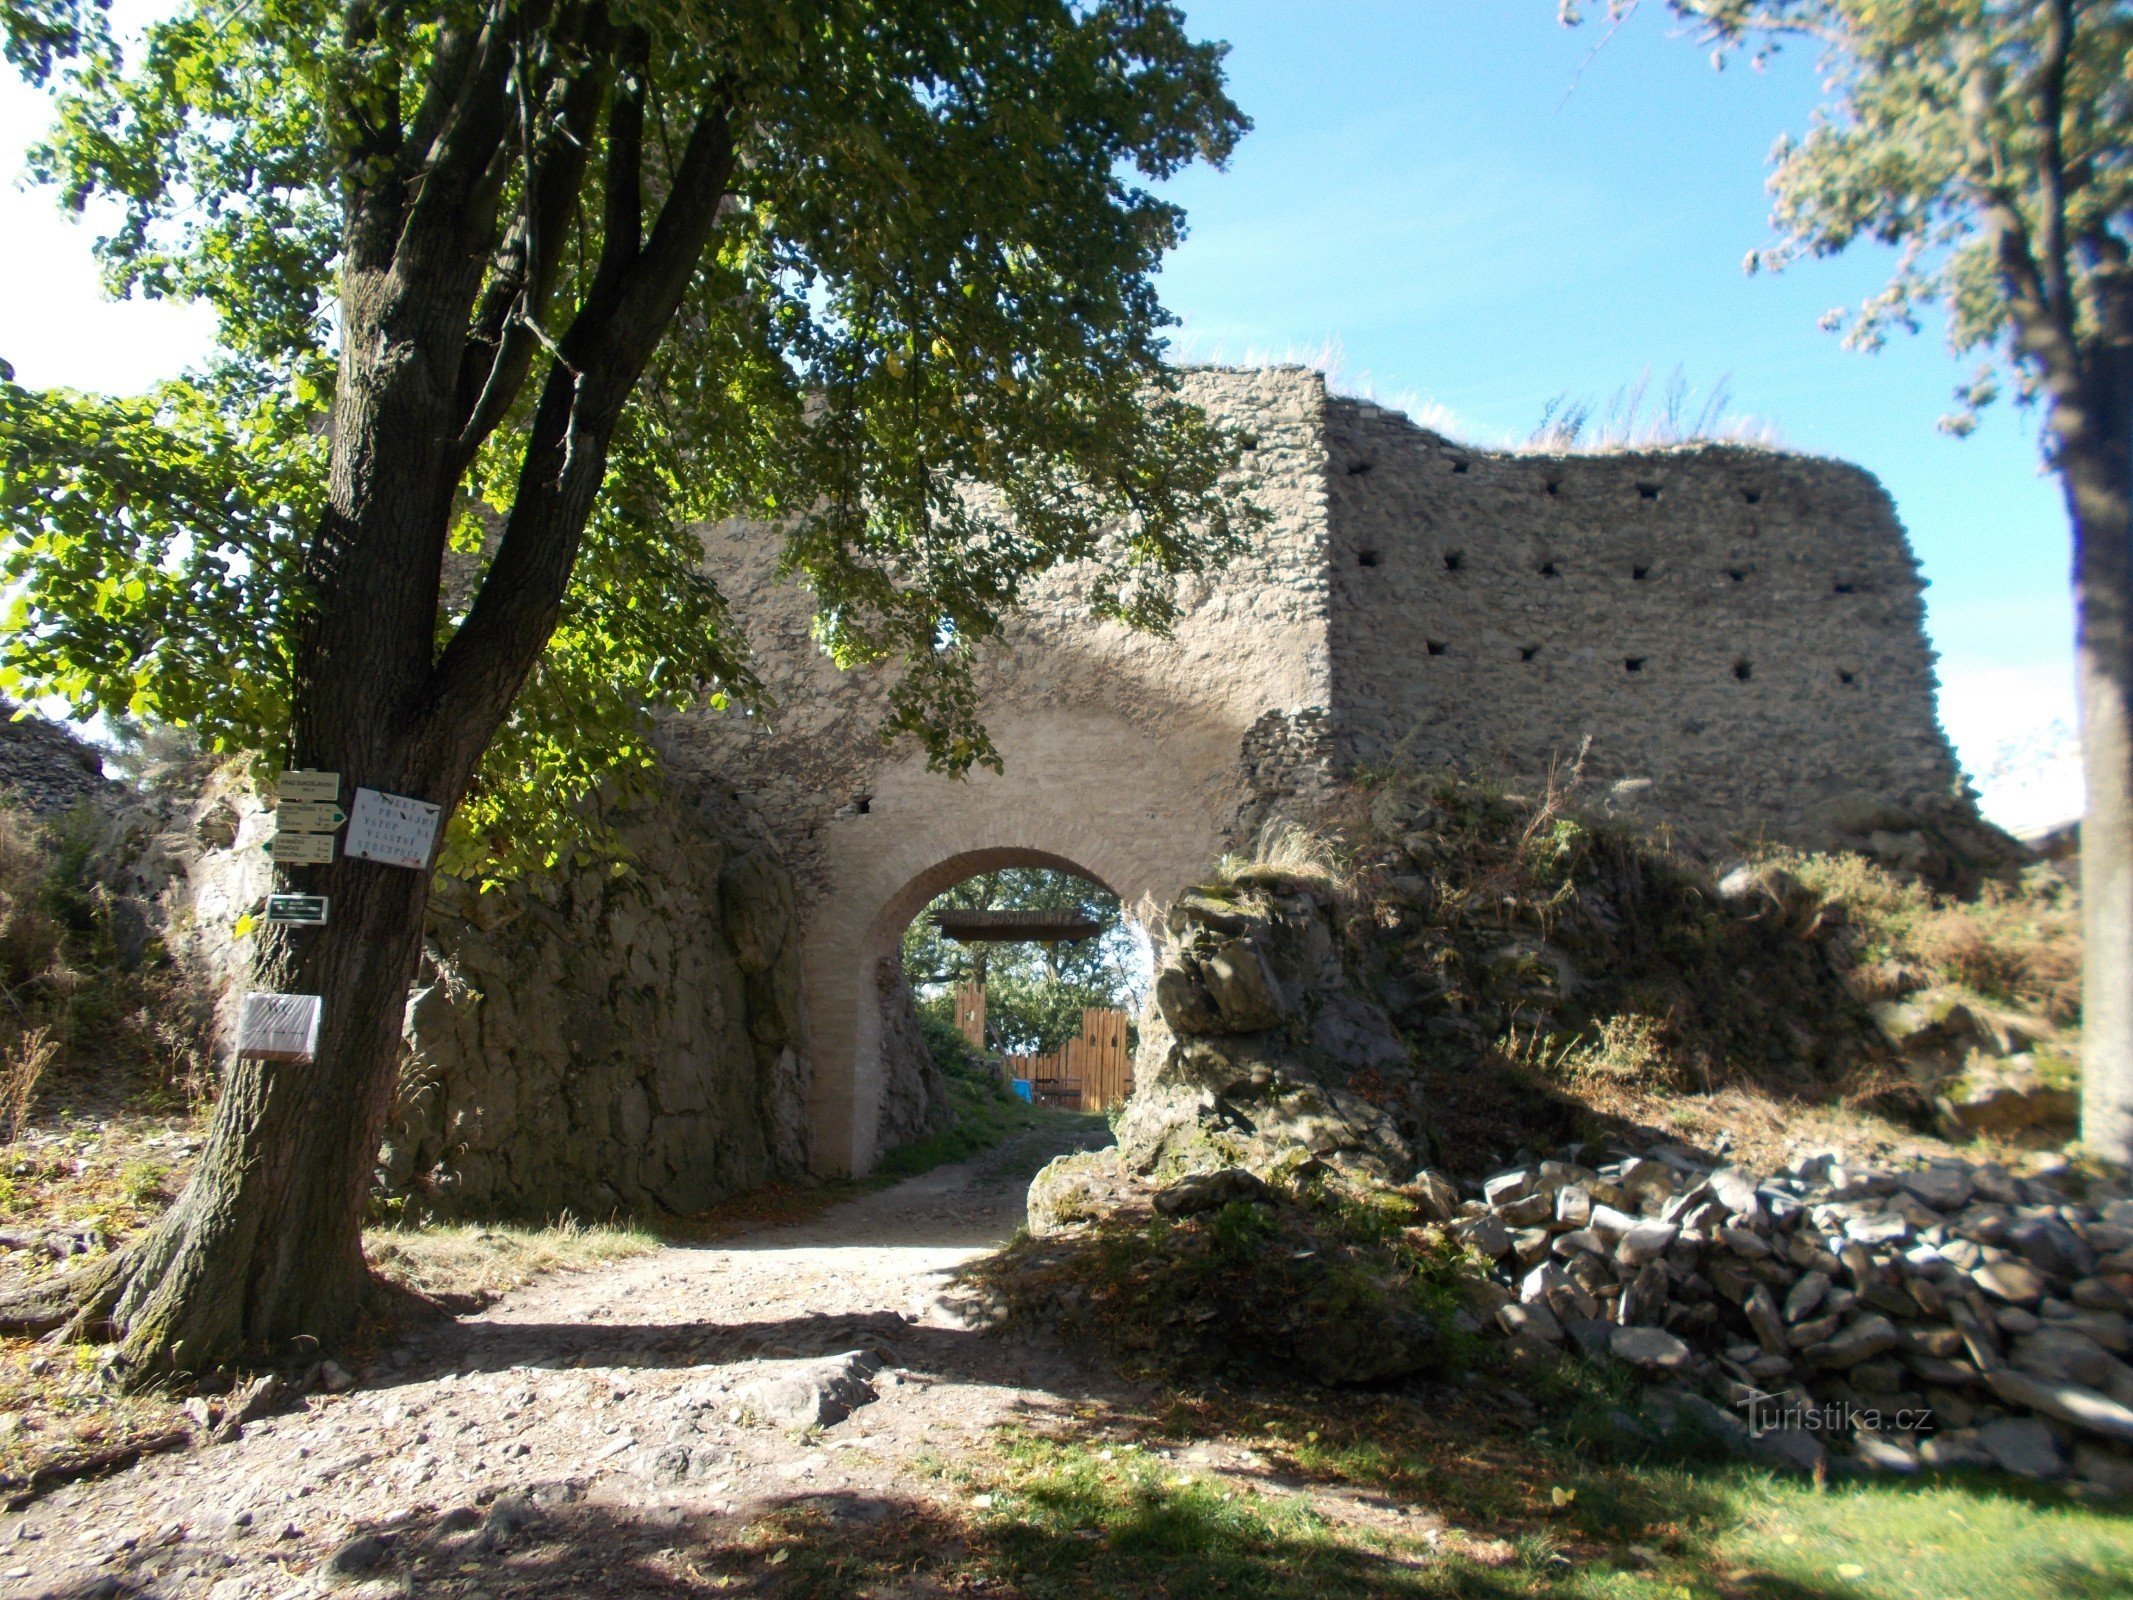 Cancello d'ingresso al castello di Sukoslav (Kostomlaty).